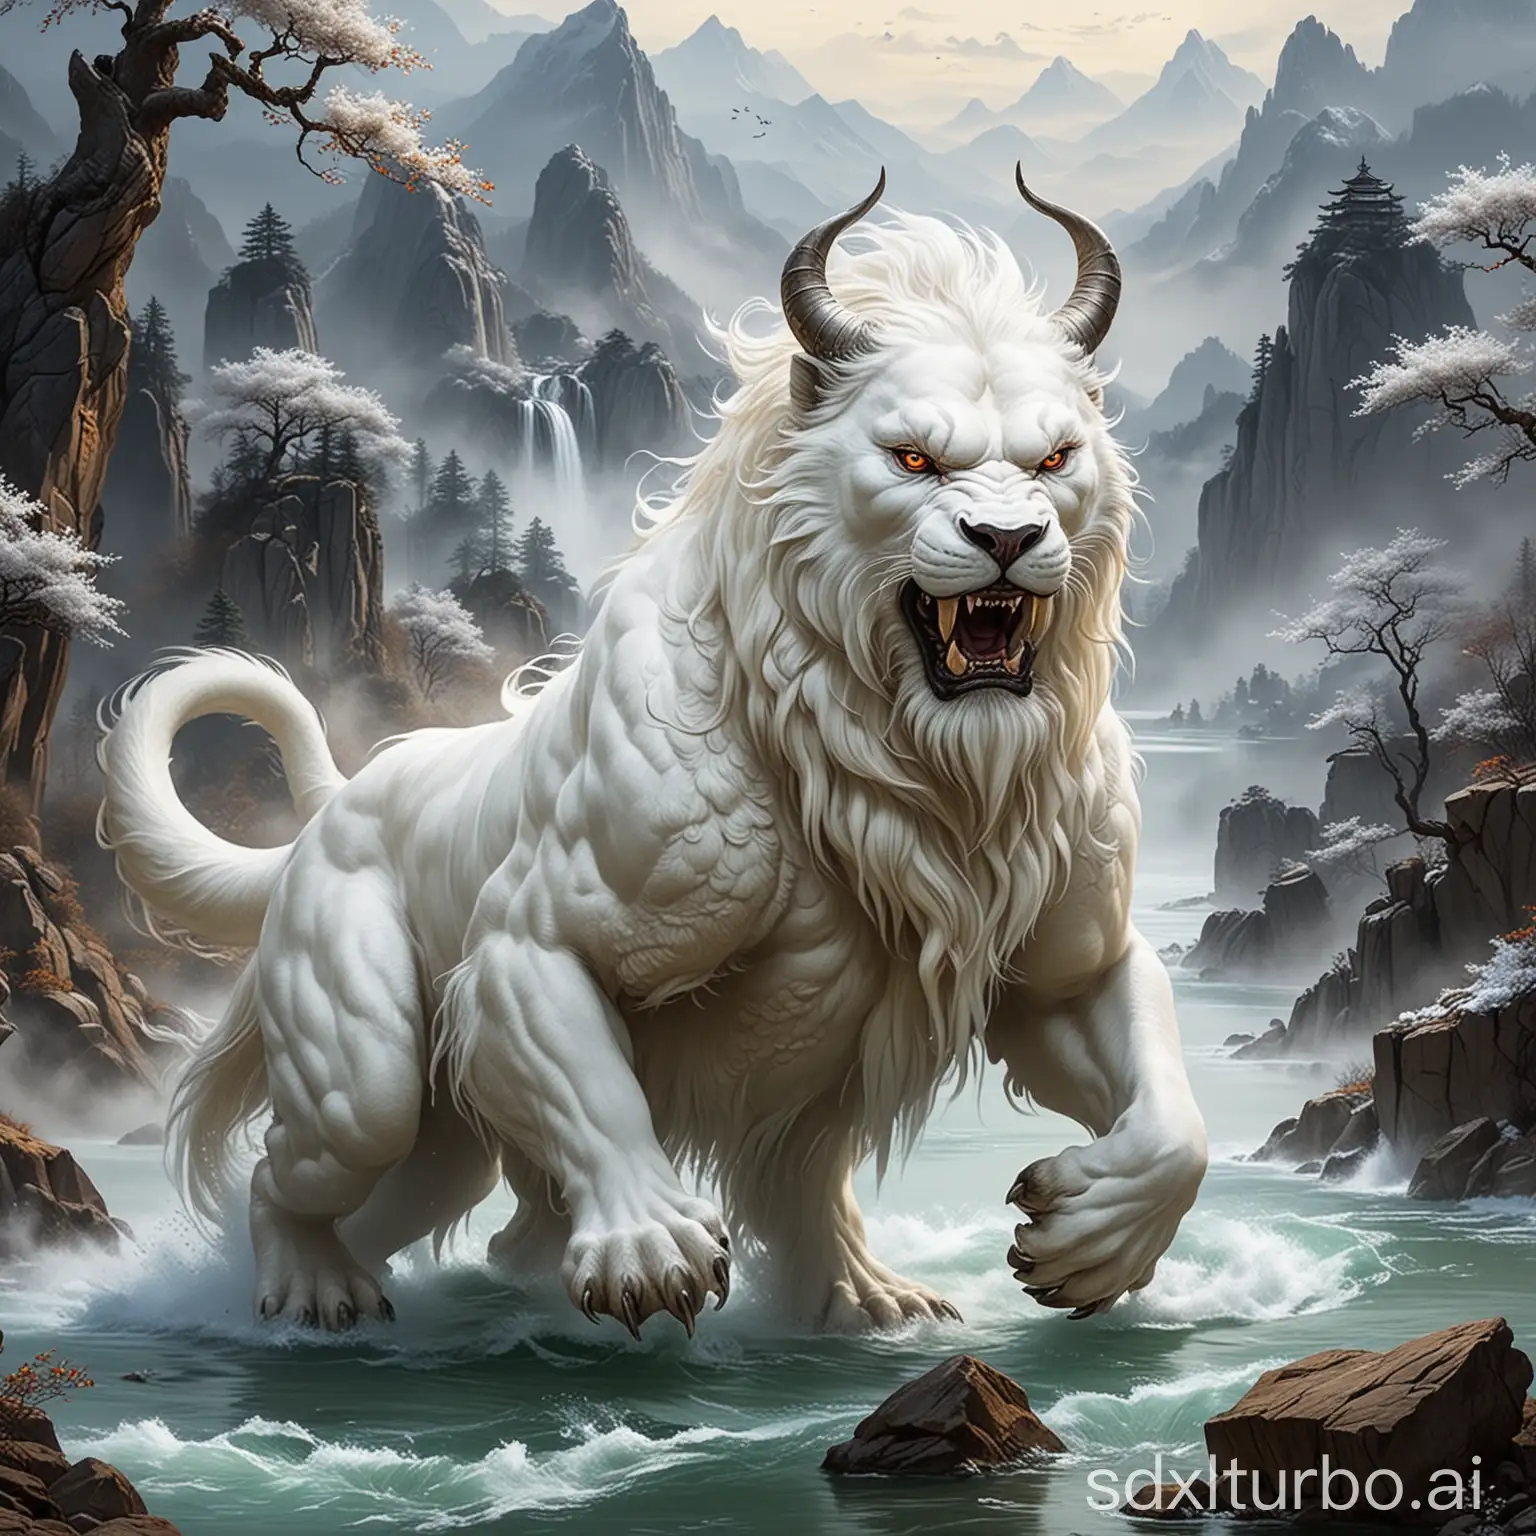 白泽，白泽是传说中昆仑山上的神兽，浑身雪白，能说人话，通万物之情，是中国古代神话中地位崇高的、令人逢凶化吉的神兽，“泽”表示湖泊或者水源。